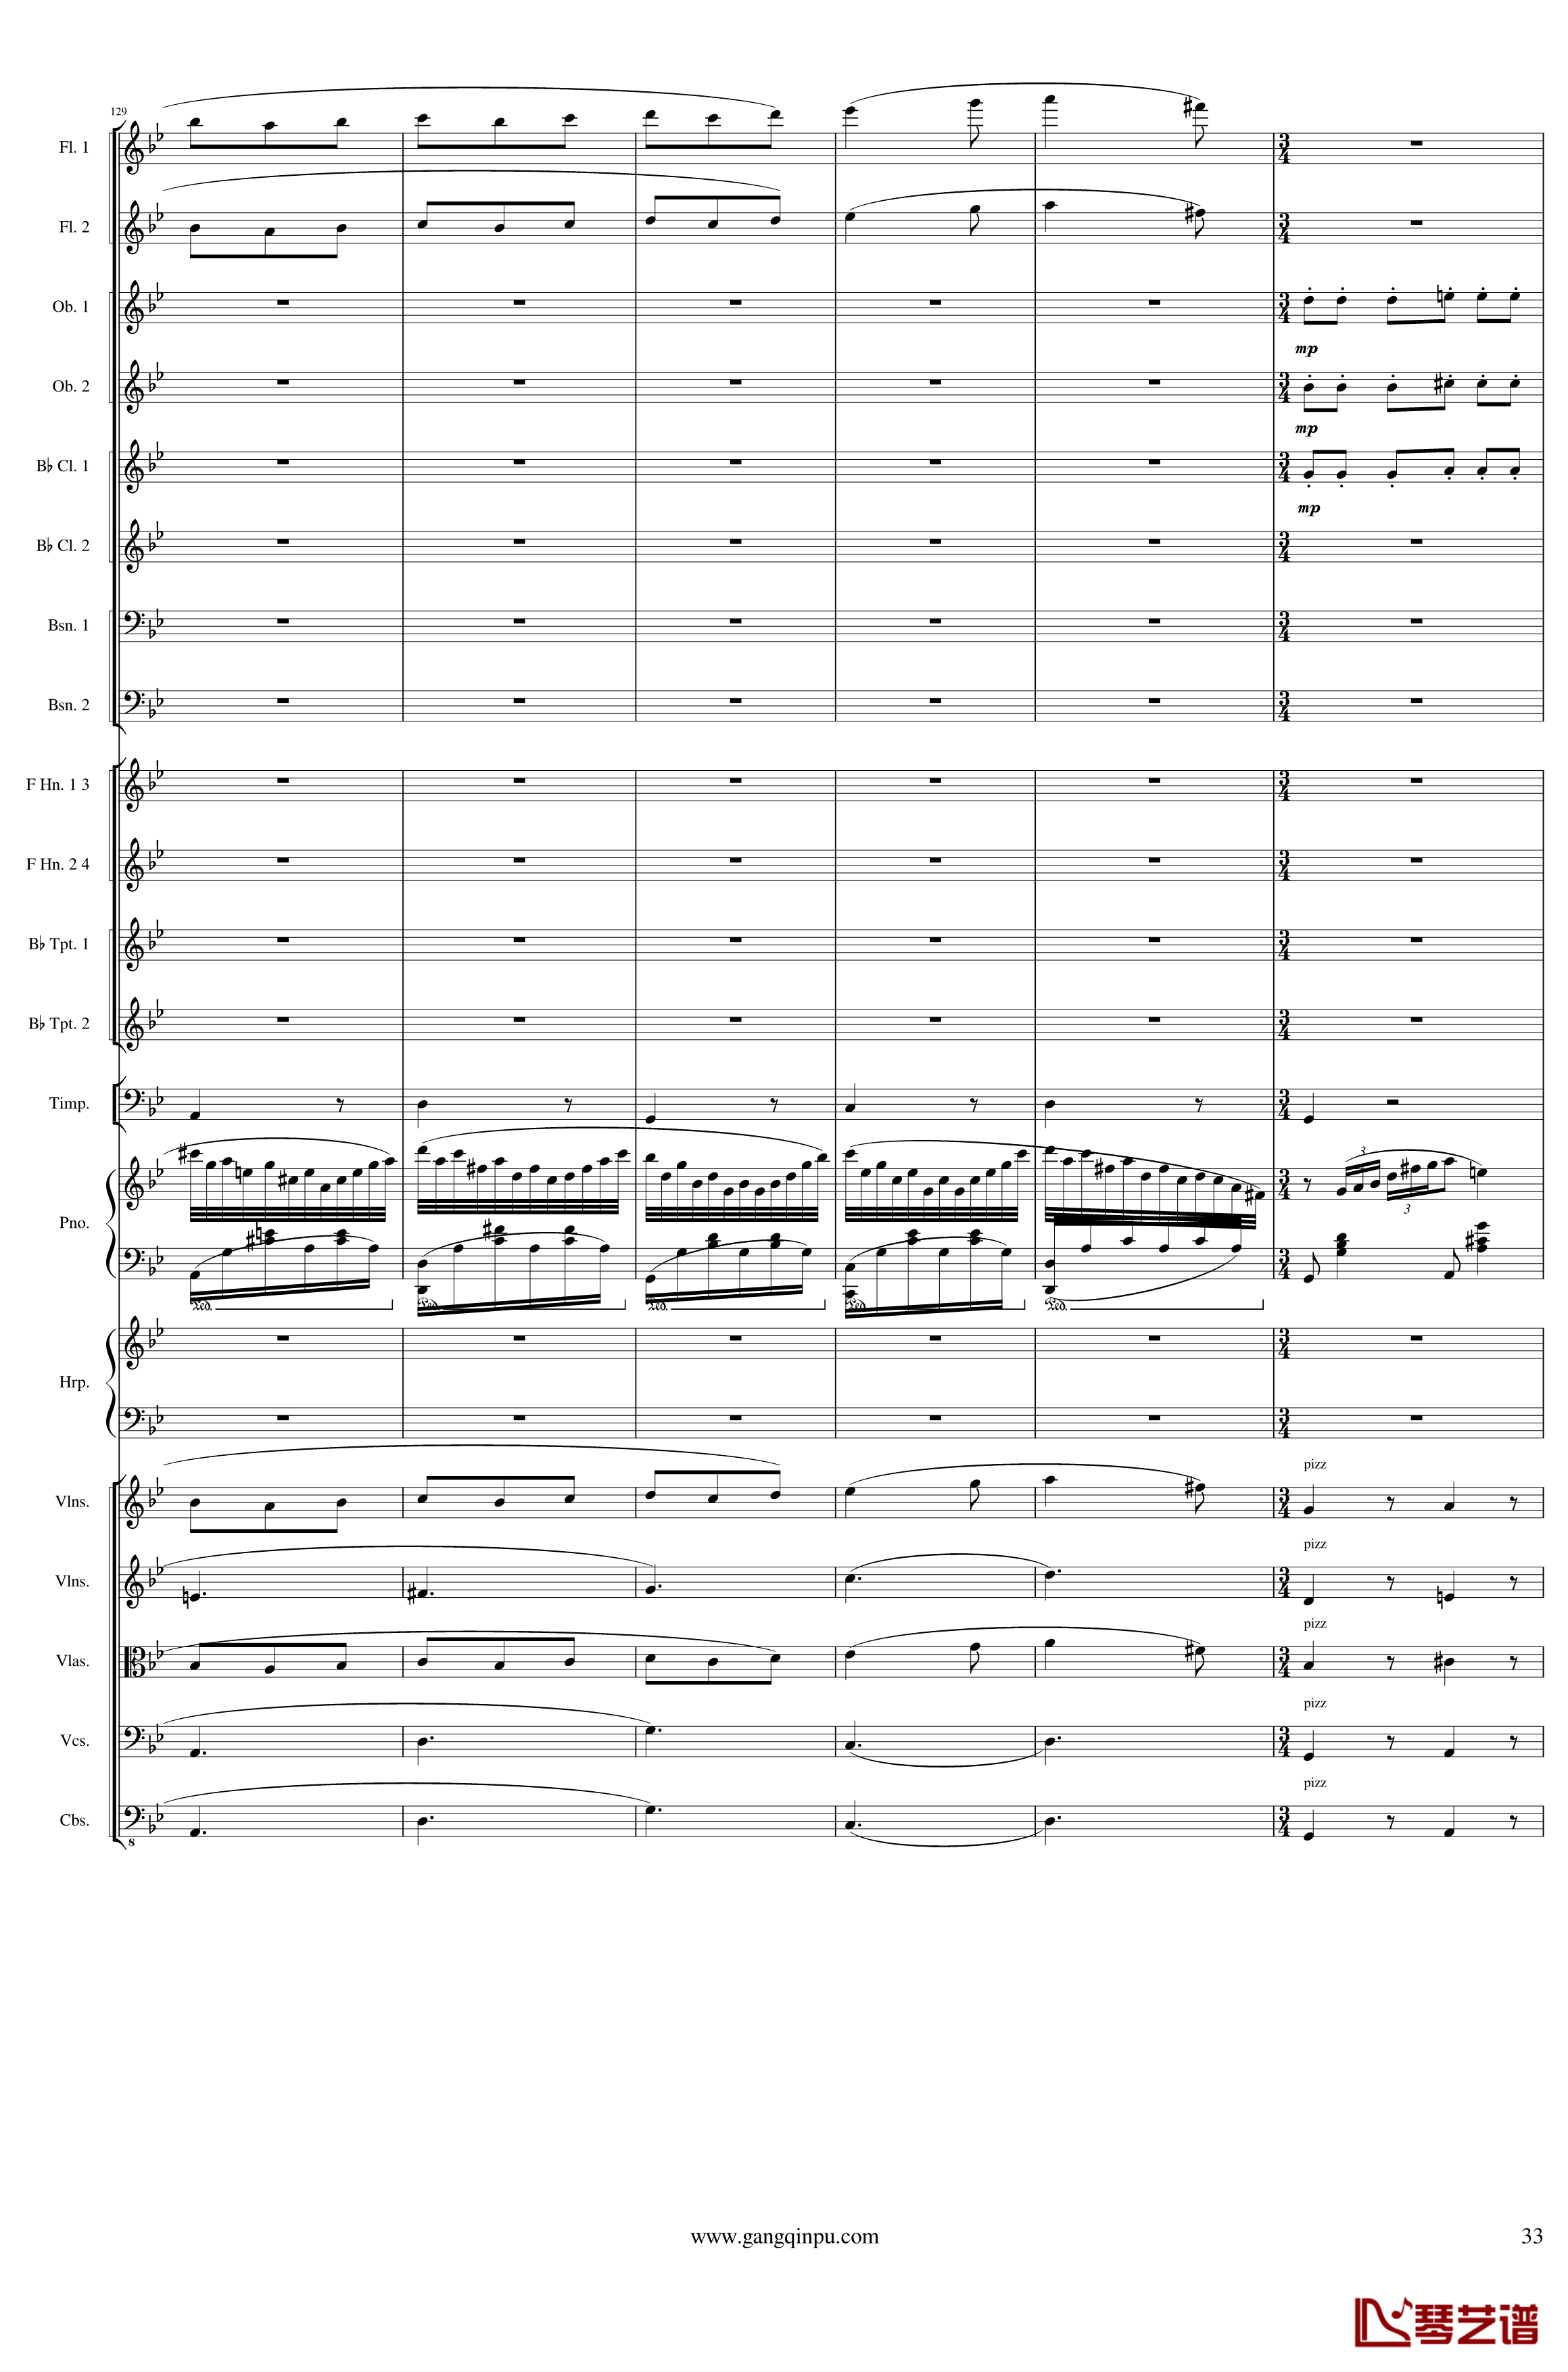 Symphonic Poem No.3, Op.91 Part 1钢琴谱-一个球33